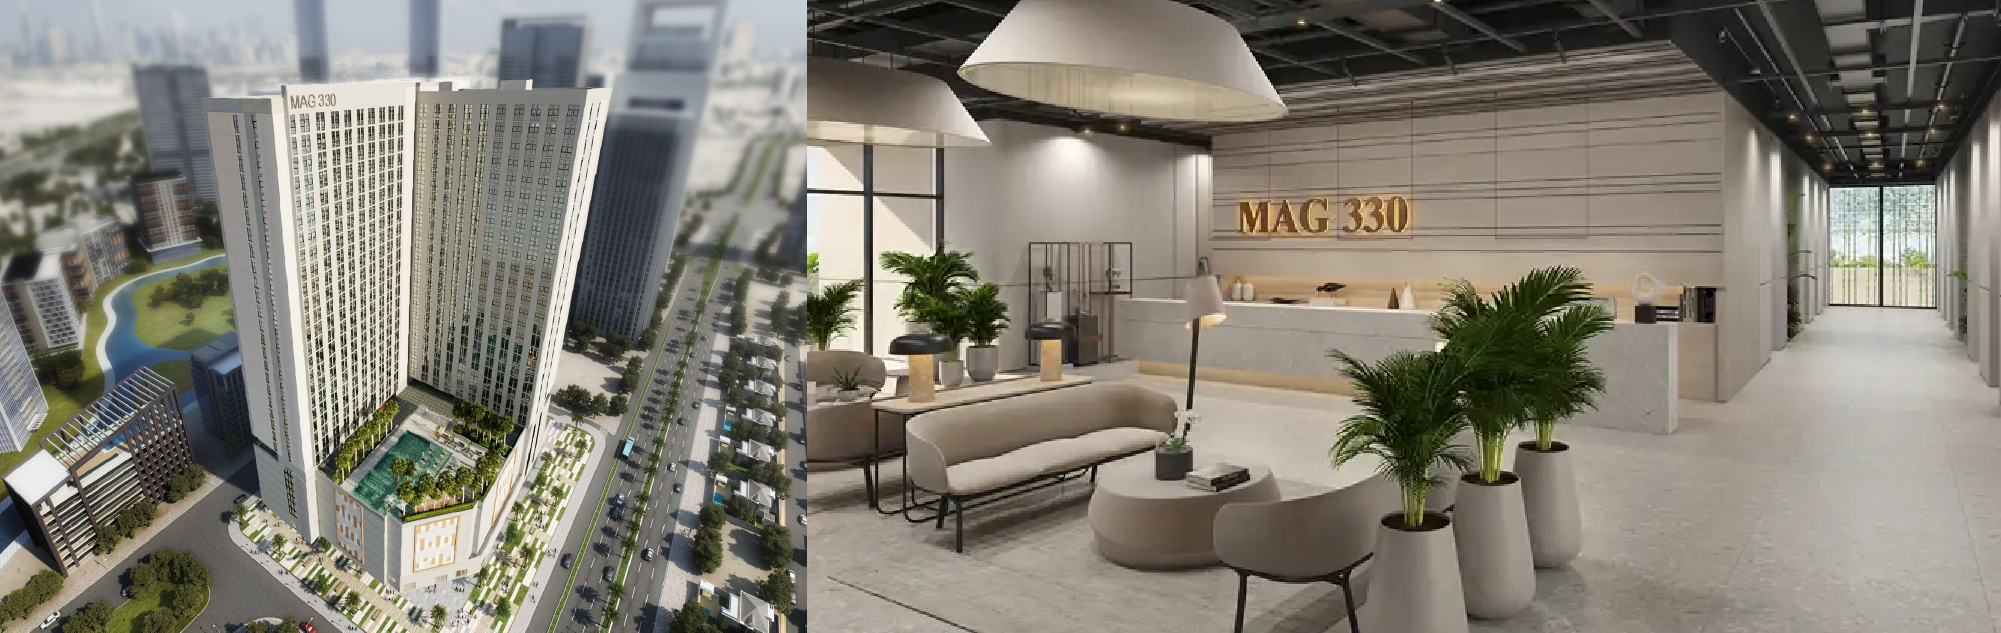 Mag 330 Properties in Dubai